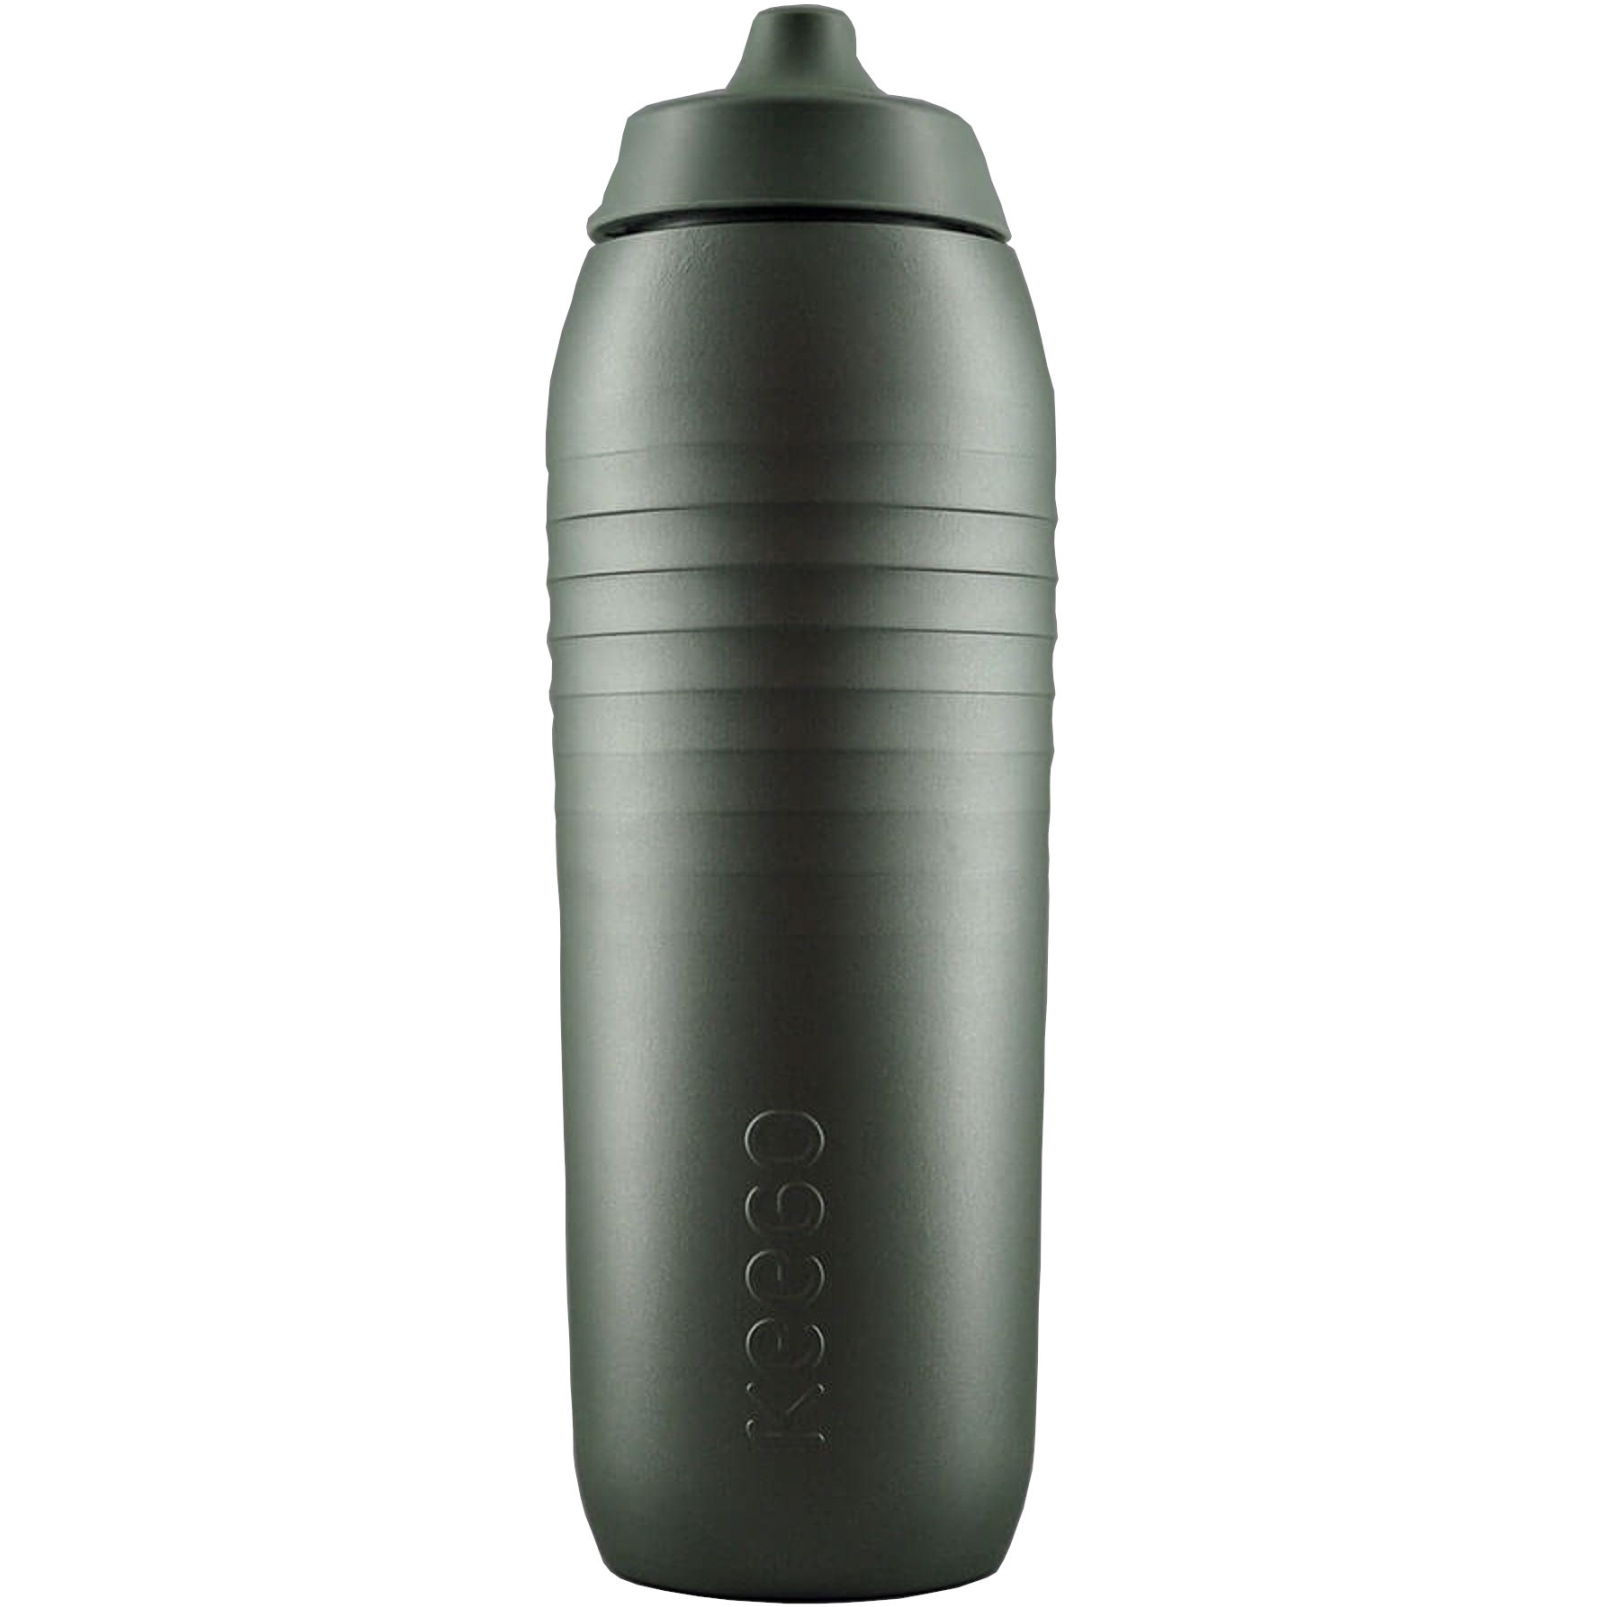 Produktbild von KEEGO Sport Trinkflasche - 750ml - Gravel Green